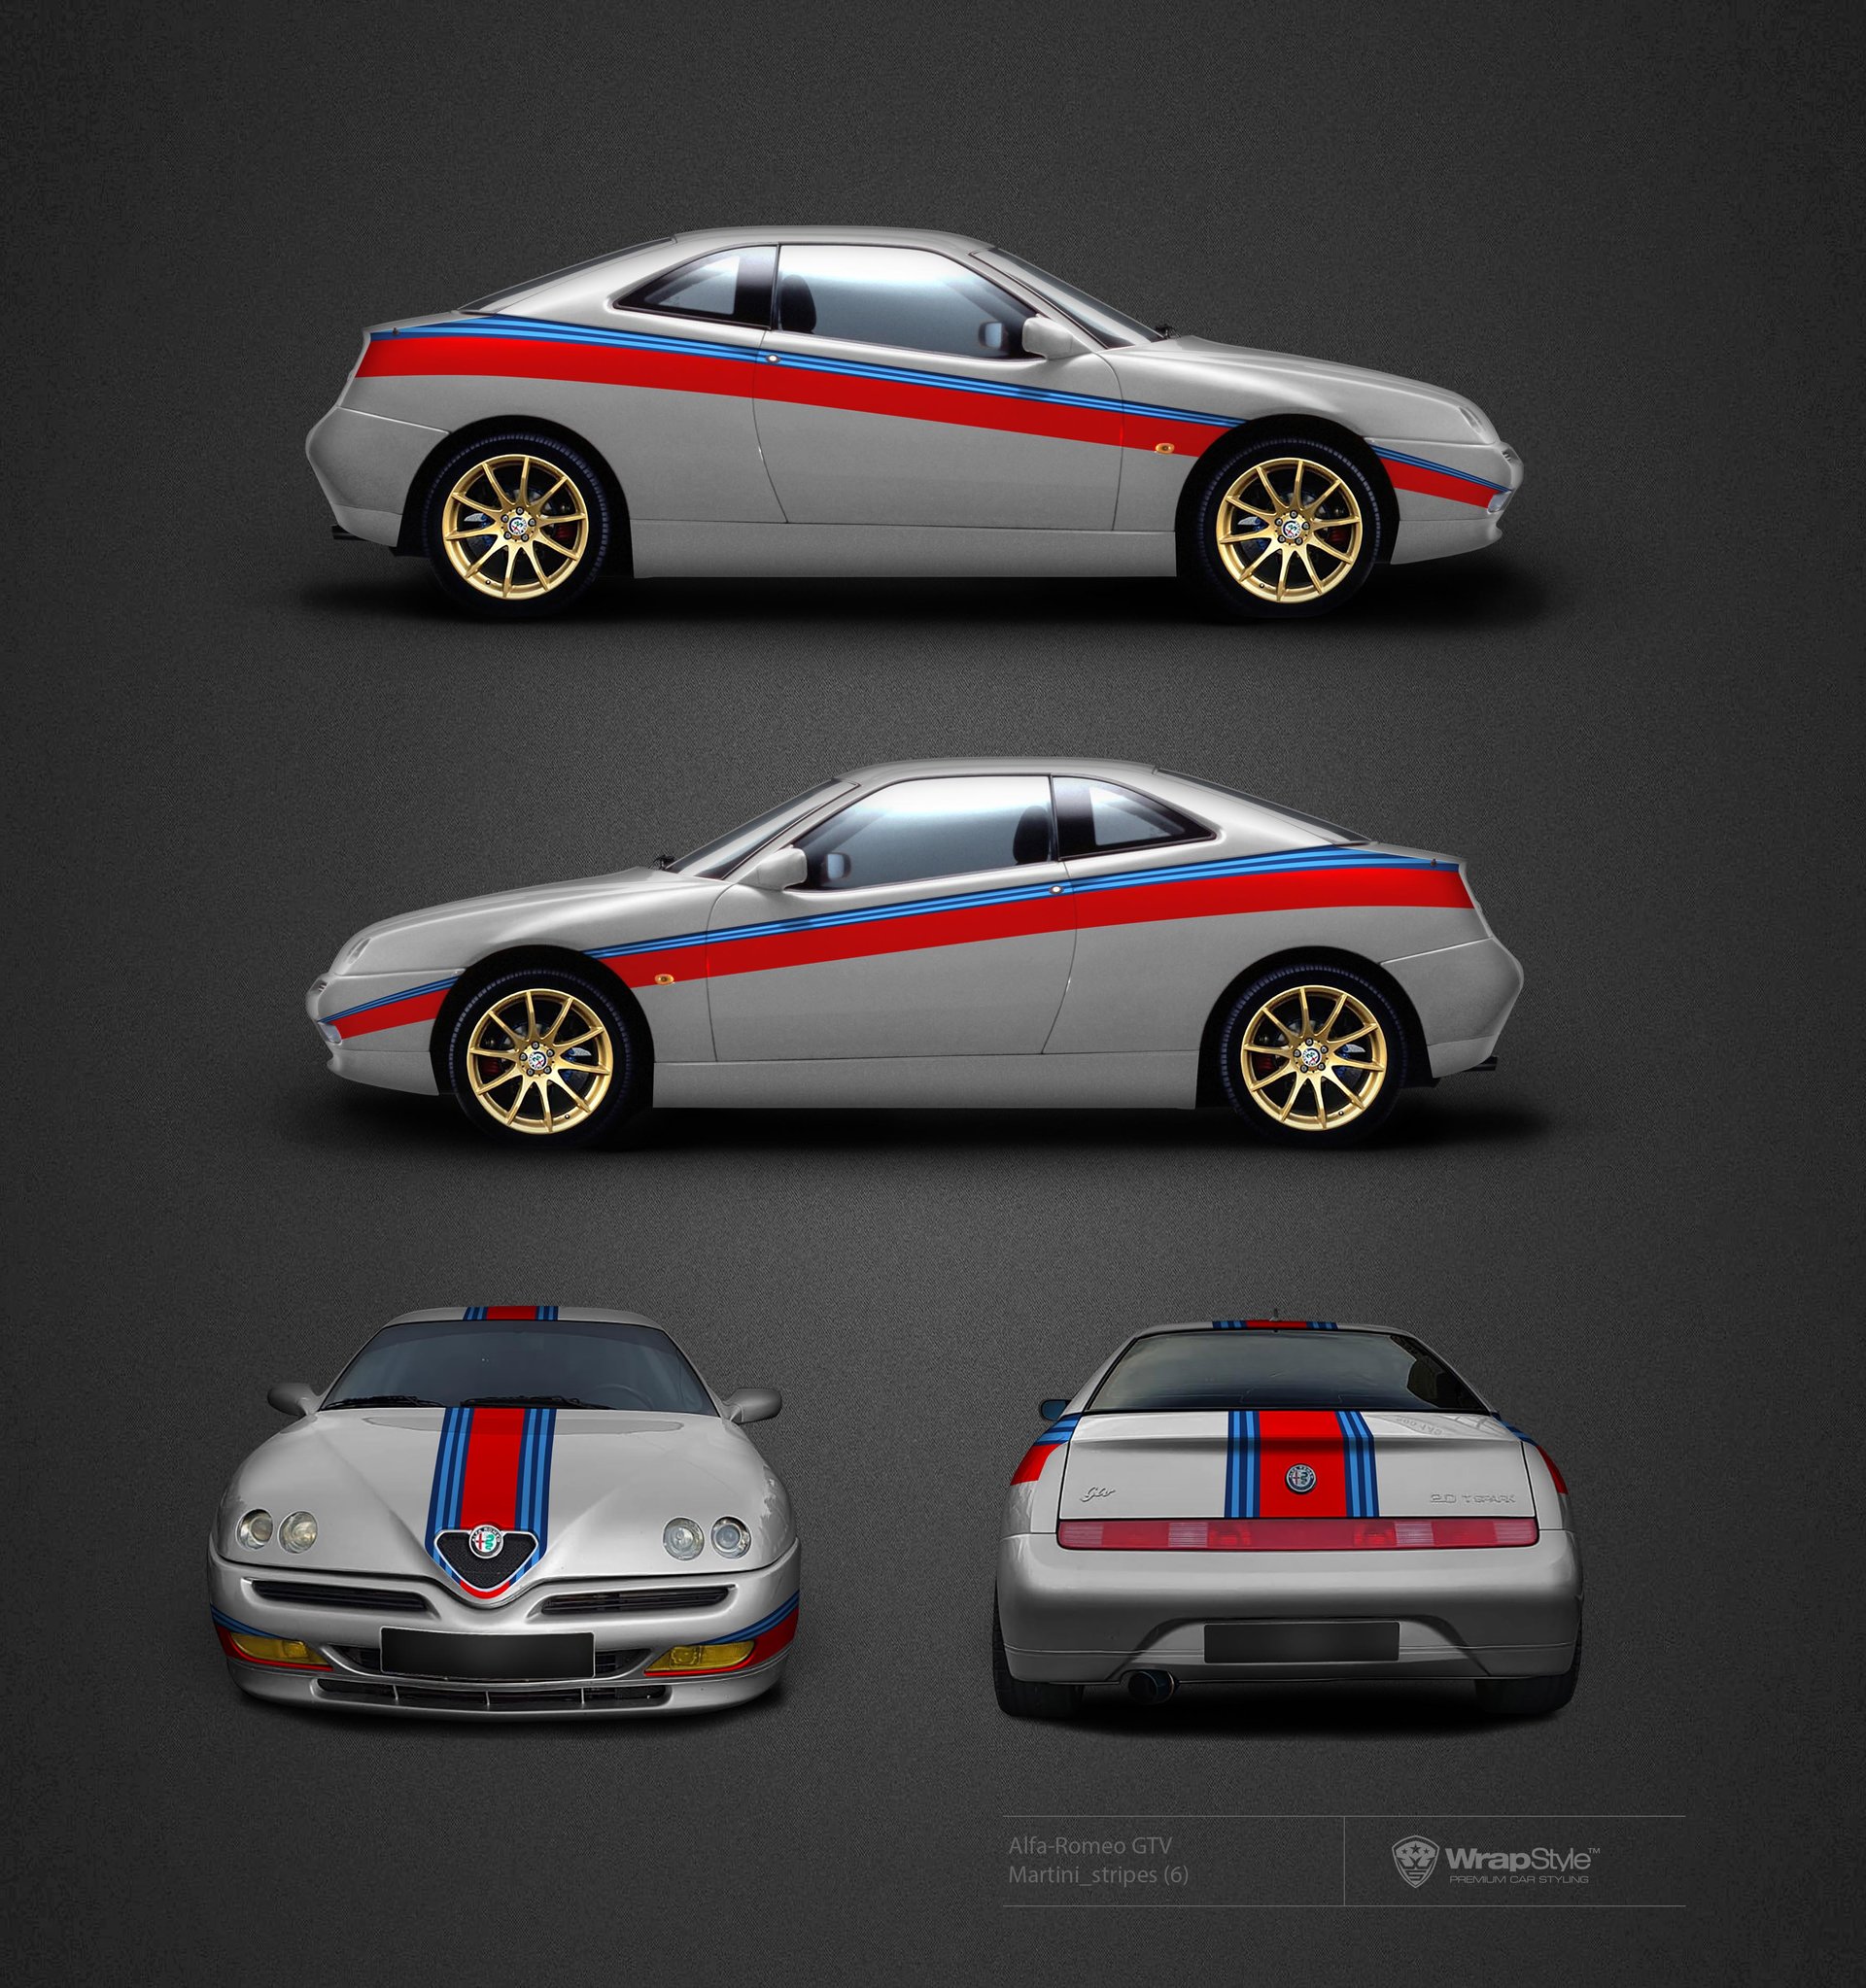 Alfa Romeo GTV - Martini stripes | WrapStyle